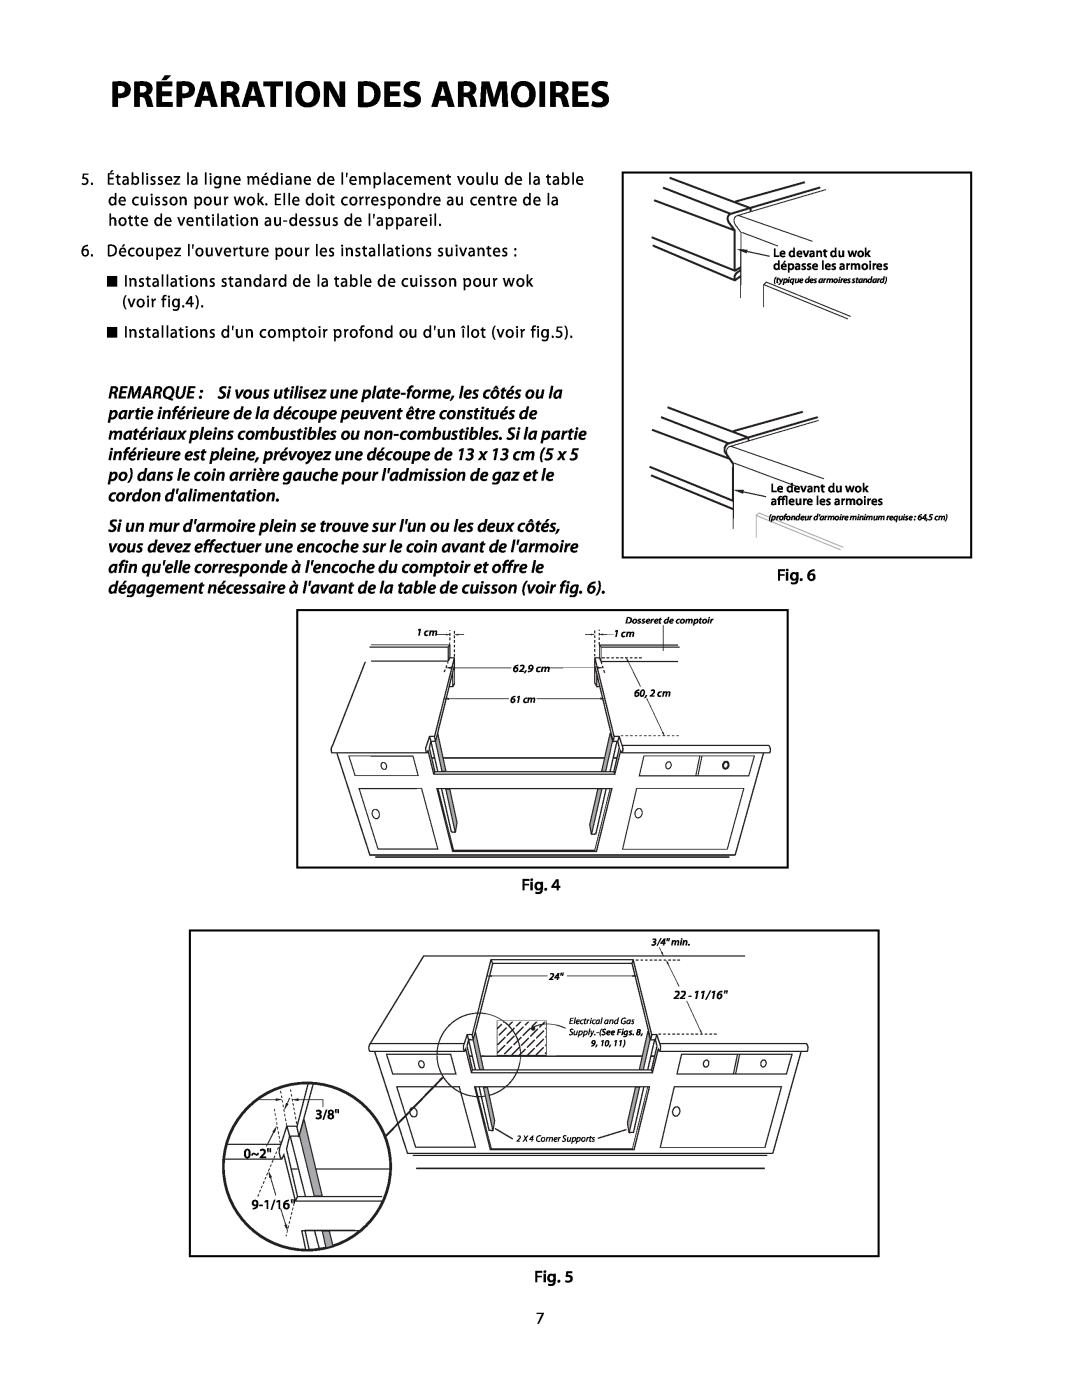 DCS C-24 Préparation Des Armoires, 9-1/16, 22 - 11/16, Le devant du wok aﬄeure les armoires, typique des armoires standard 